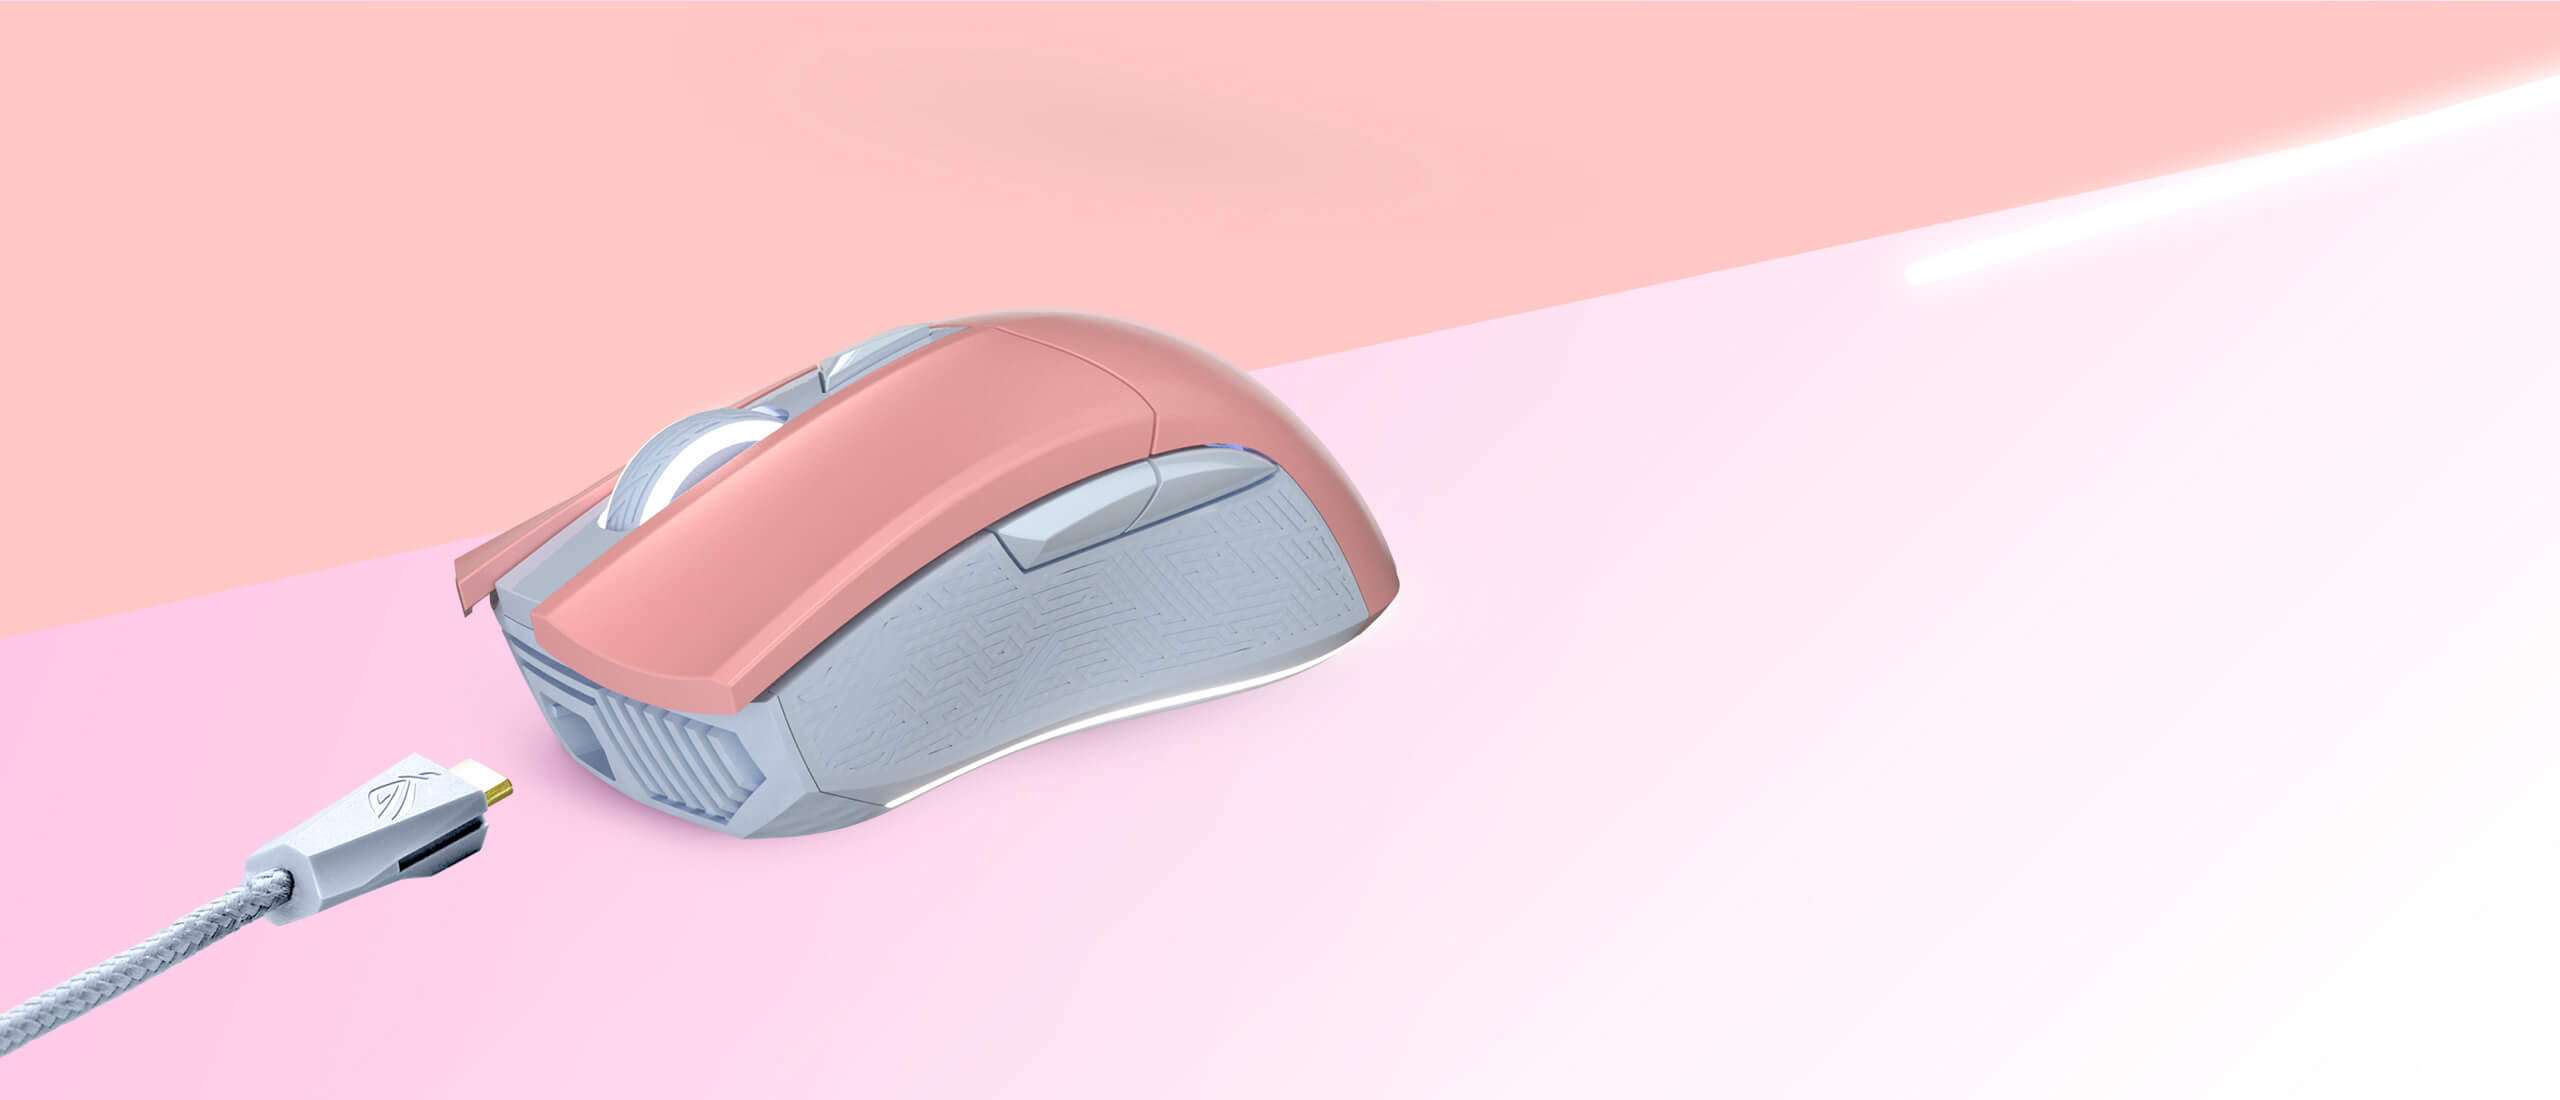 Chuột Asus ROG Gladius II Pink (USB/Màu hồng) trang bị mắt cảm biến PMW3360 cao cấp